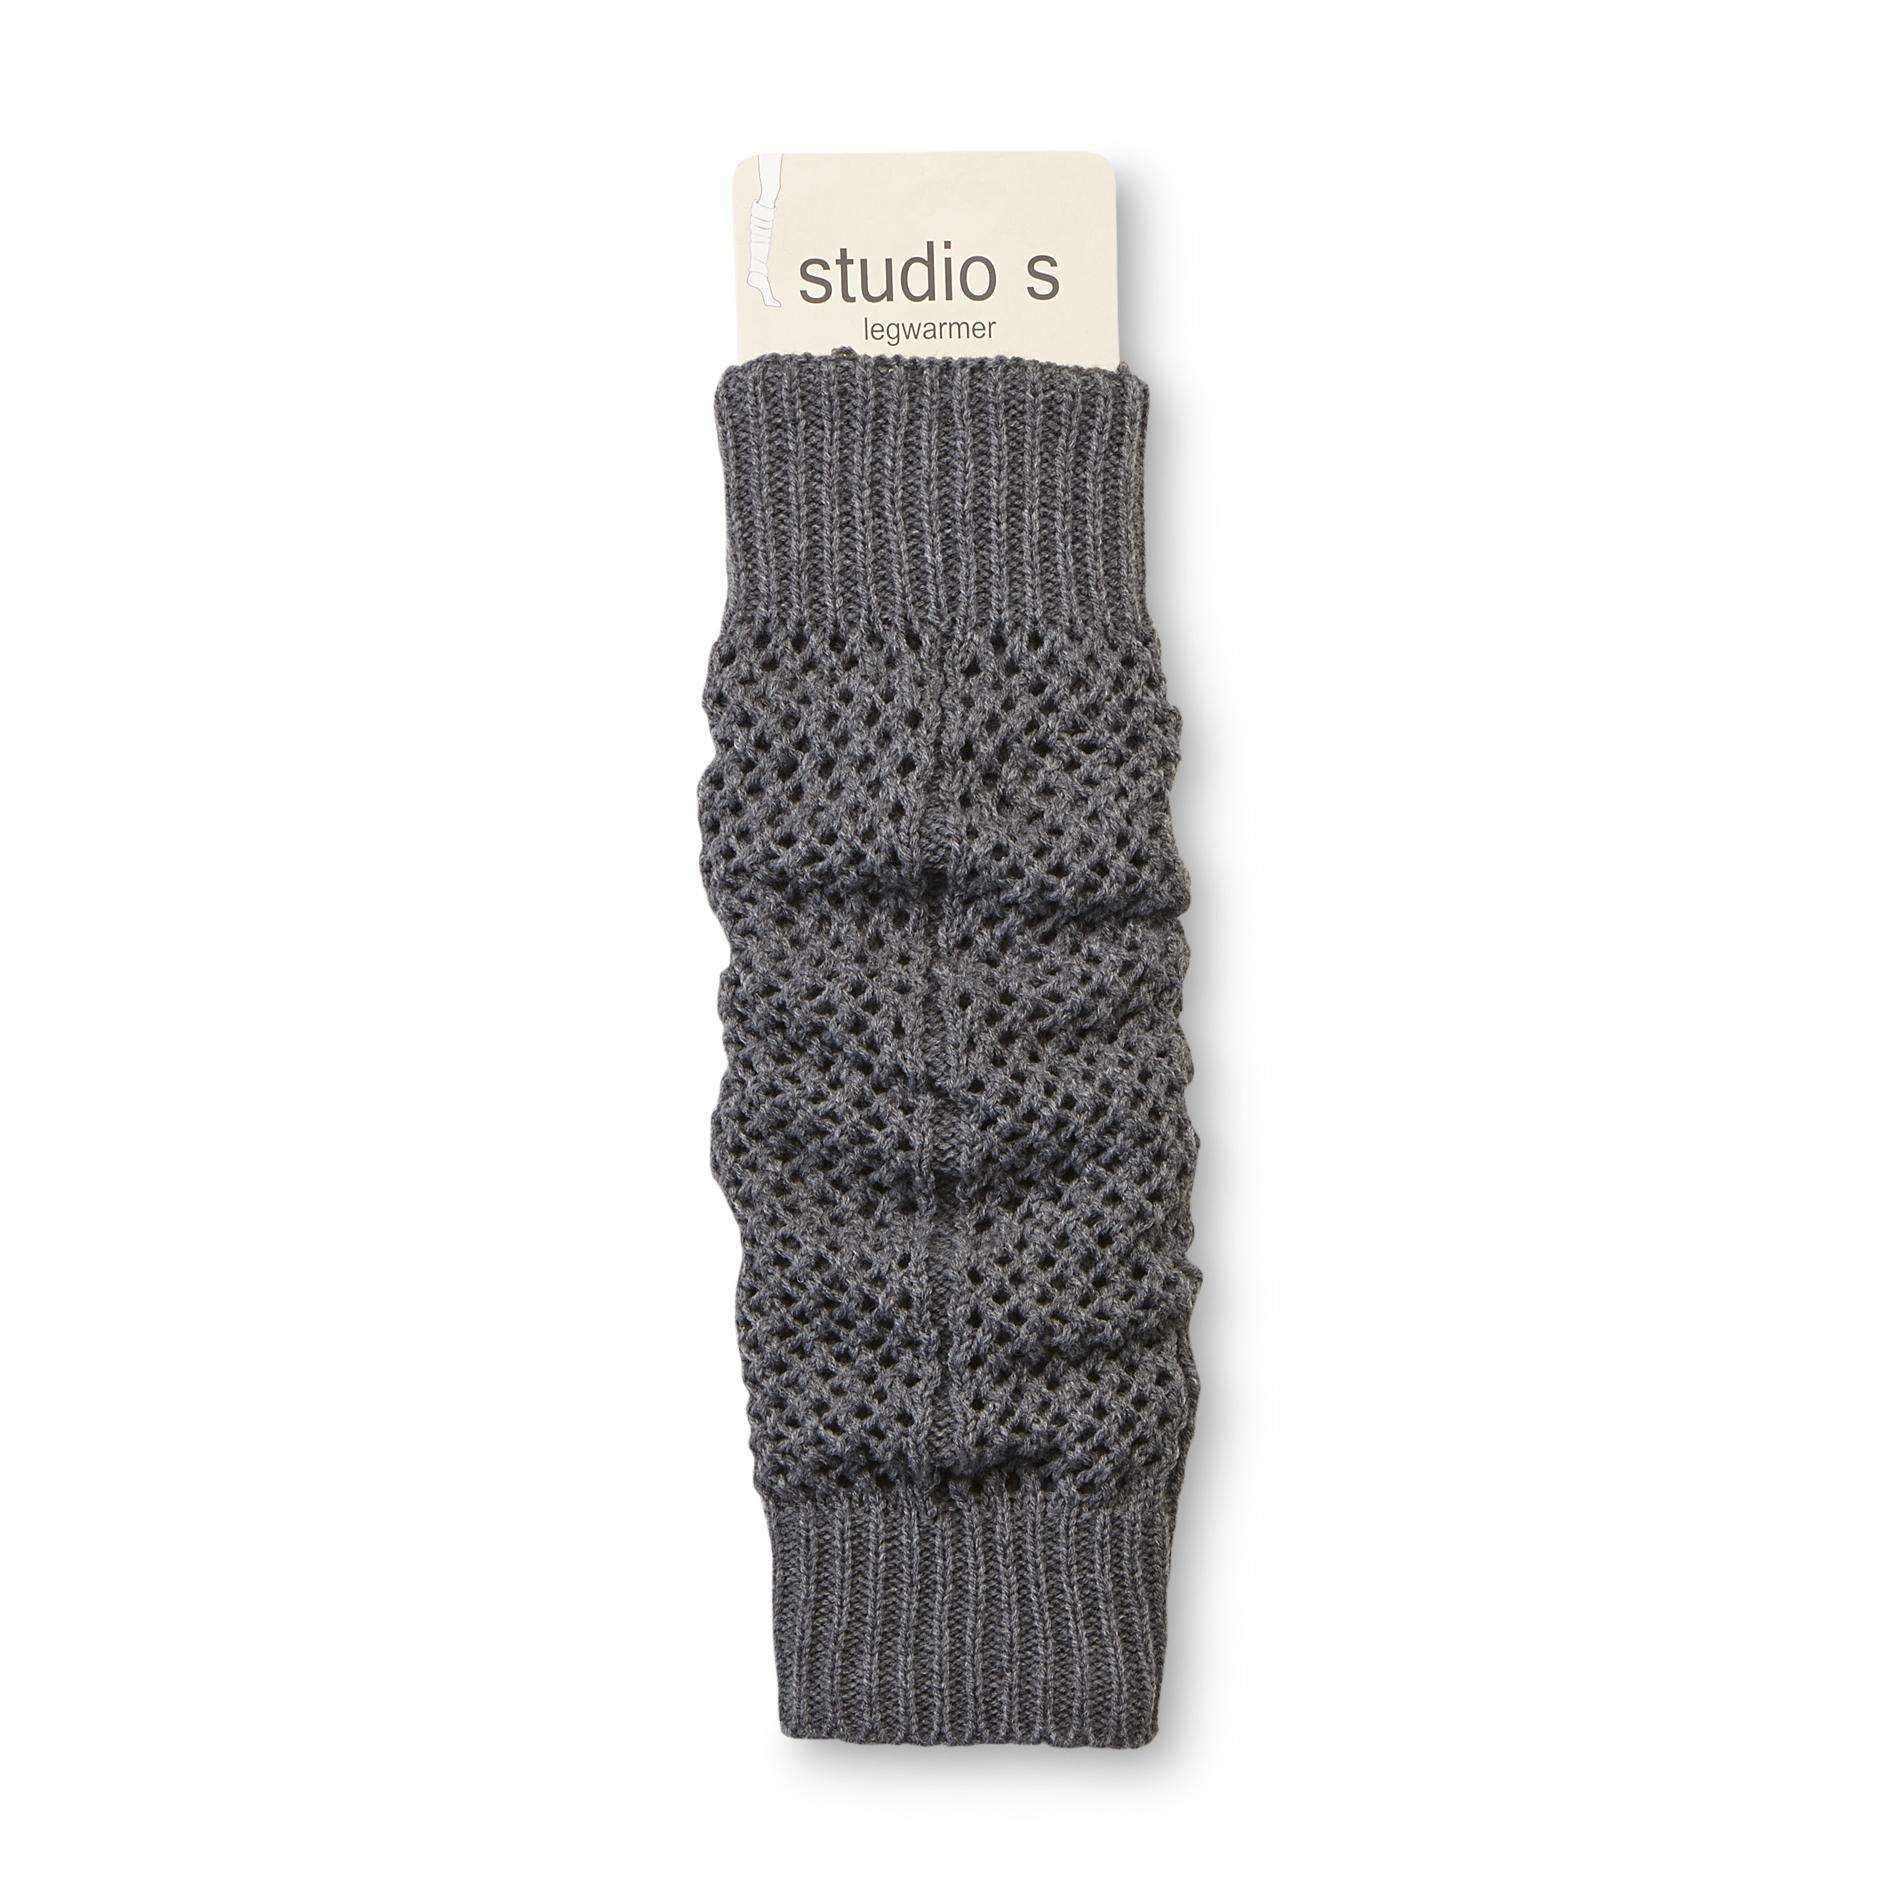 Studio S Women's Crochet Leg Warmers